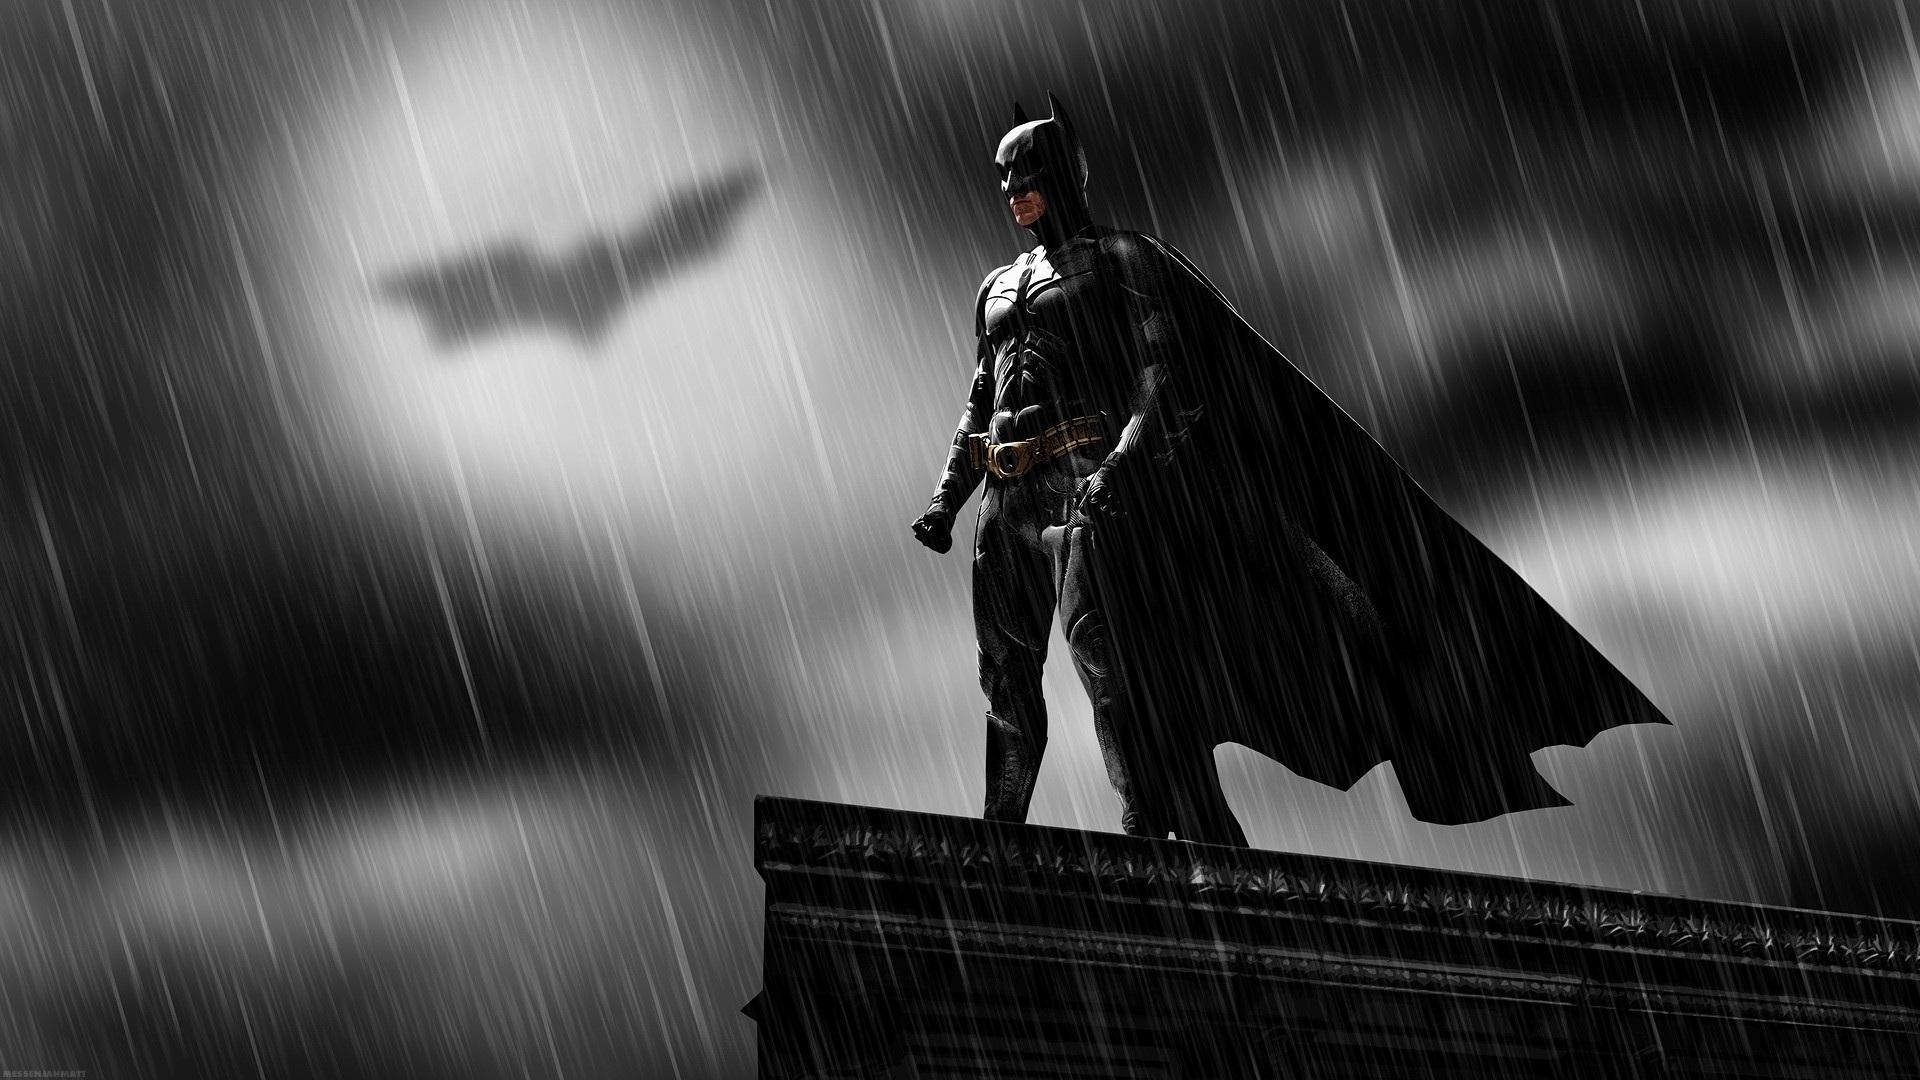 Batman Rooftops Rain Bat Signal MessenjahMatt Movies The Dark Knight 1920x1080